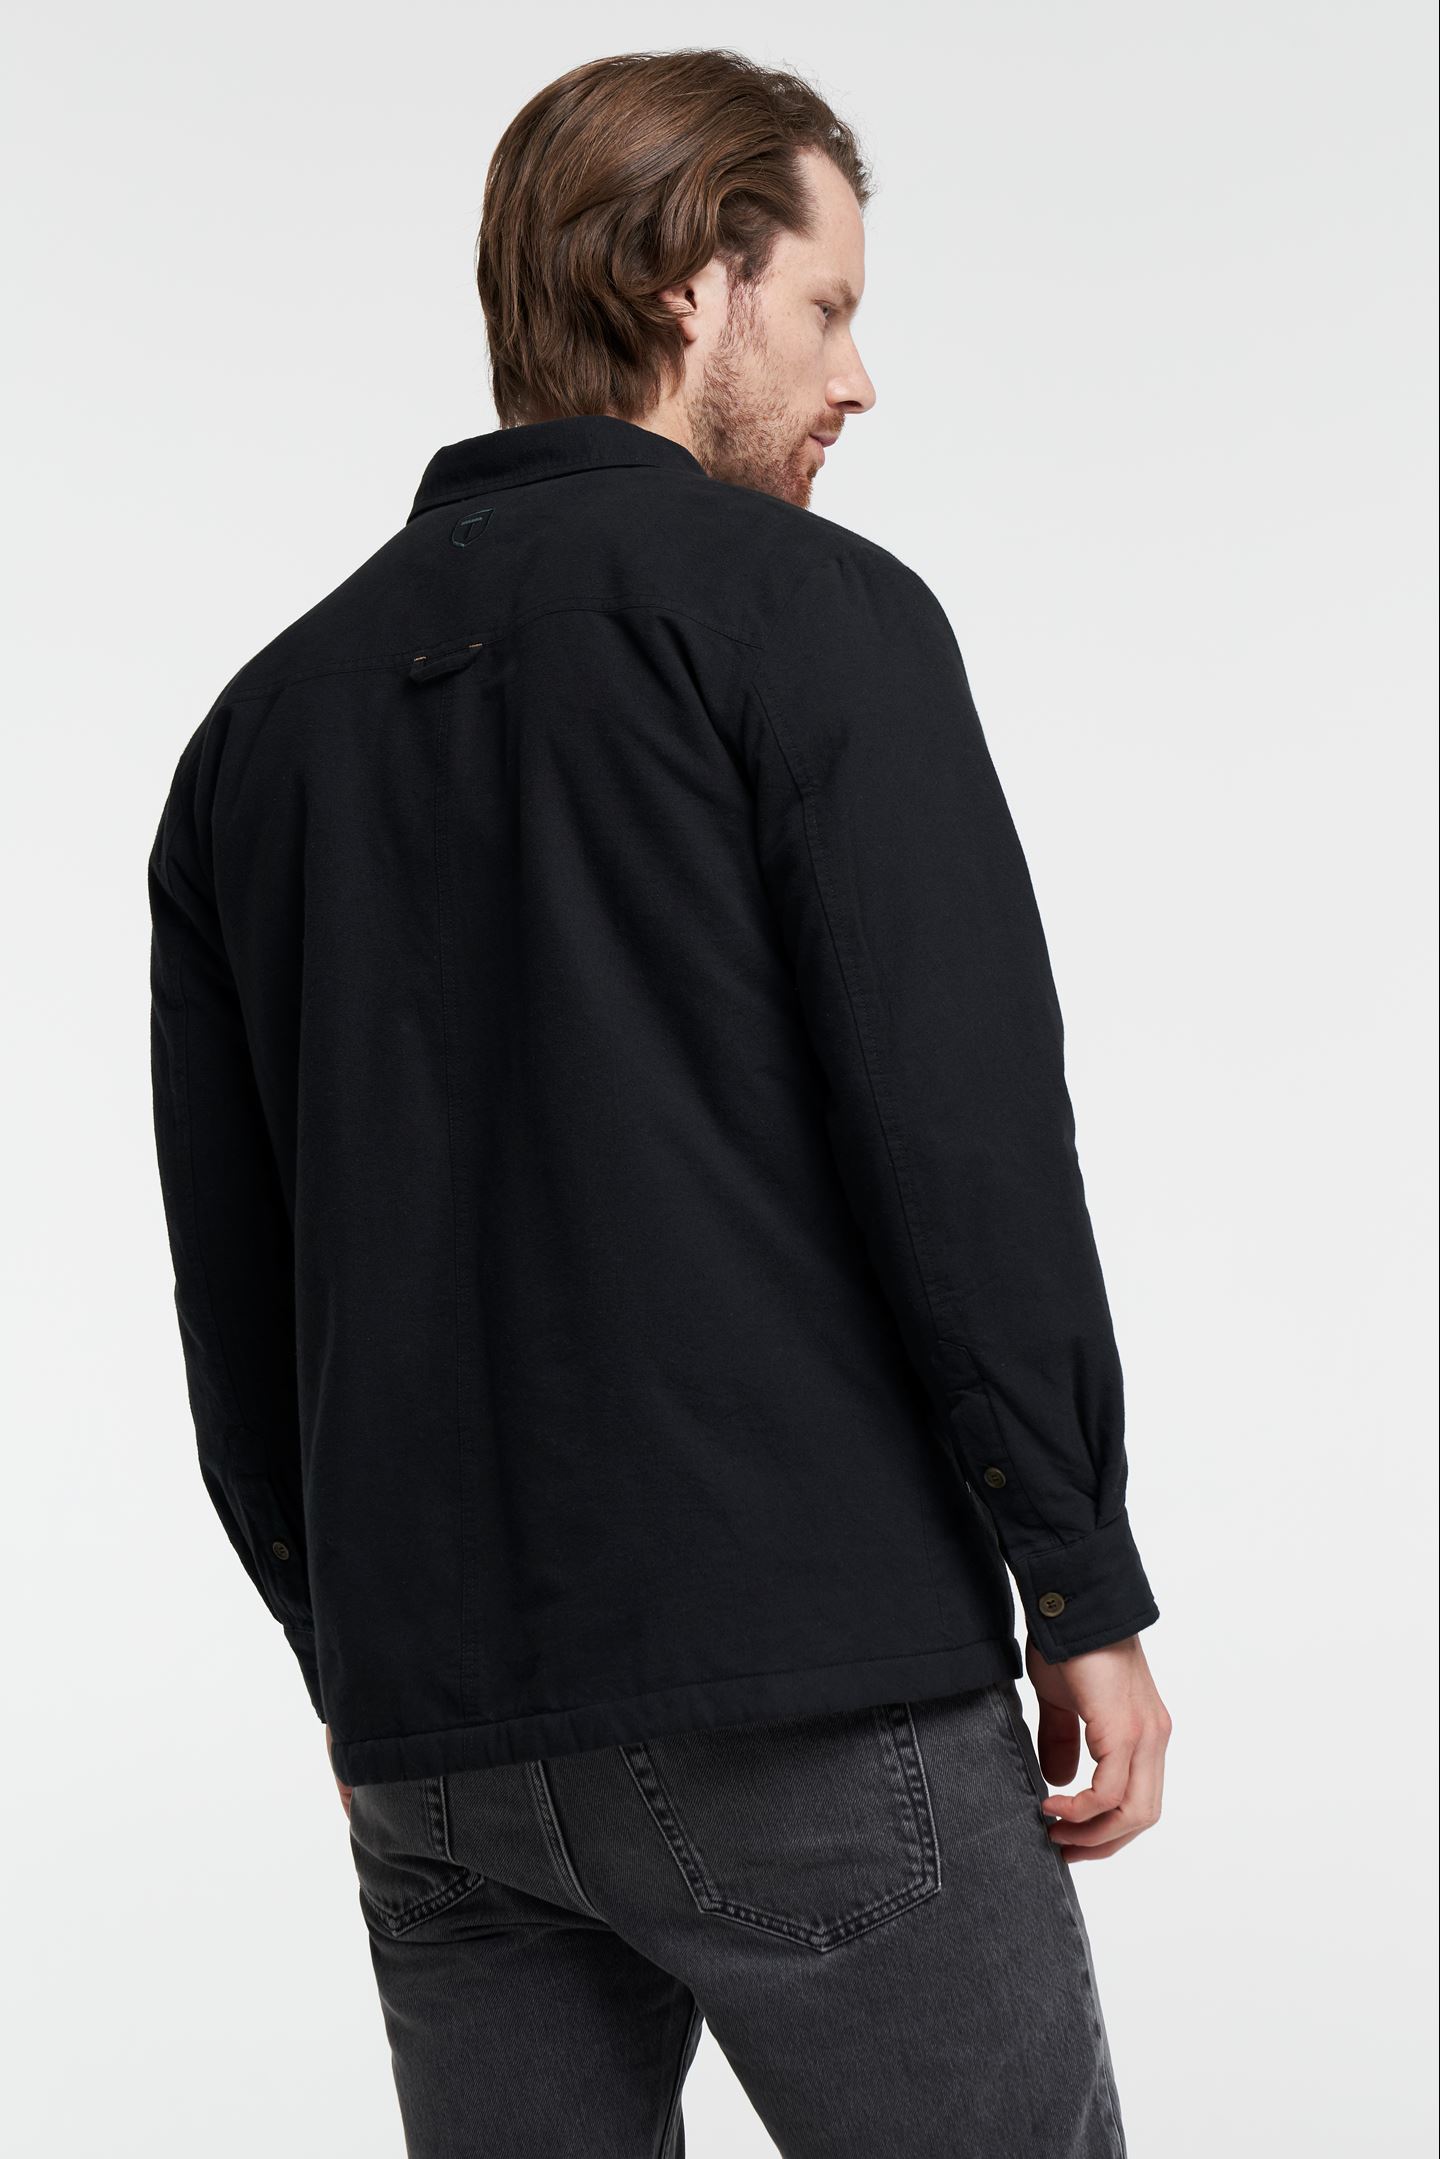 Cargo Shirt Jacket Lined - - Overshirt Black